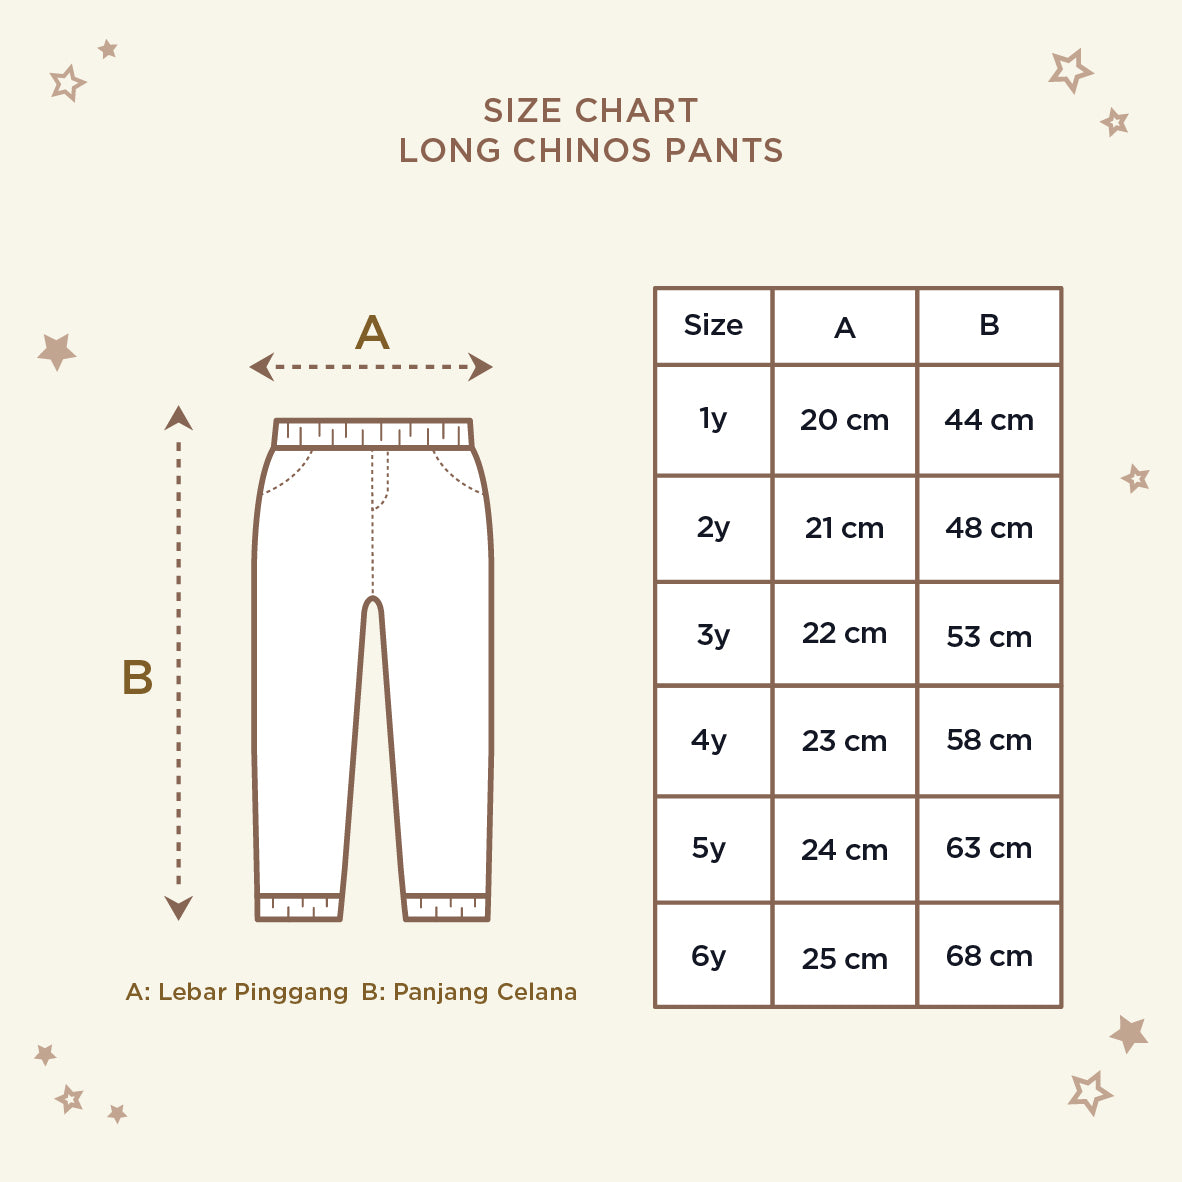 Long Chinos Pants 7.0